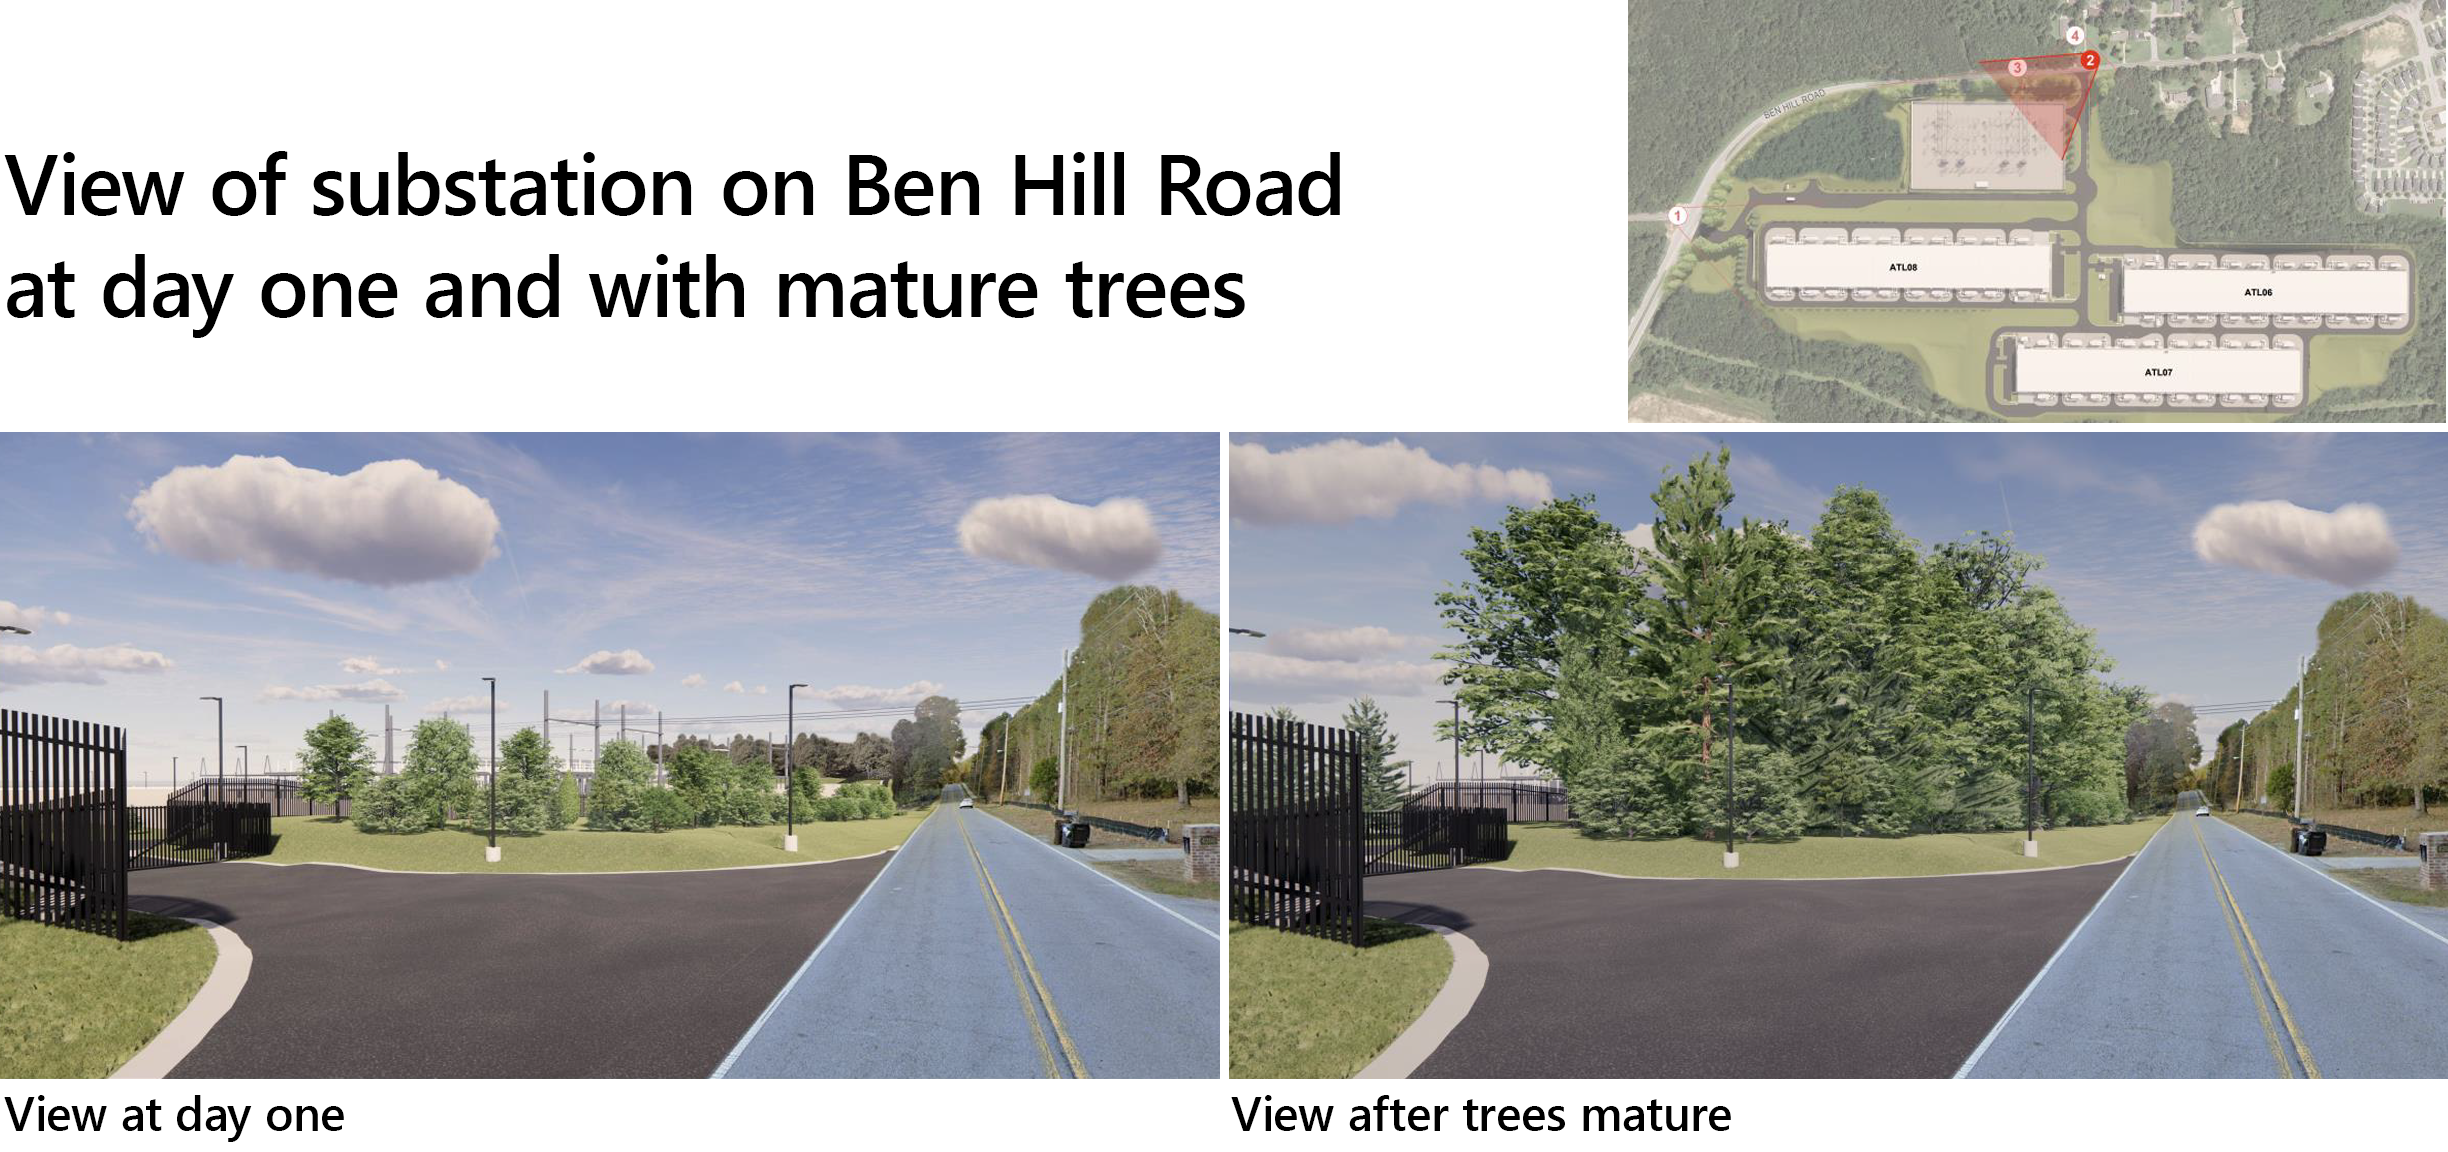 पहले दिन बेन हिल रोड पर और परिपक्व पेड़ों के साथ सबस्टेशन का दृश्य